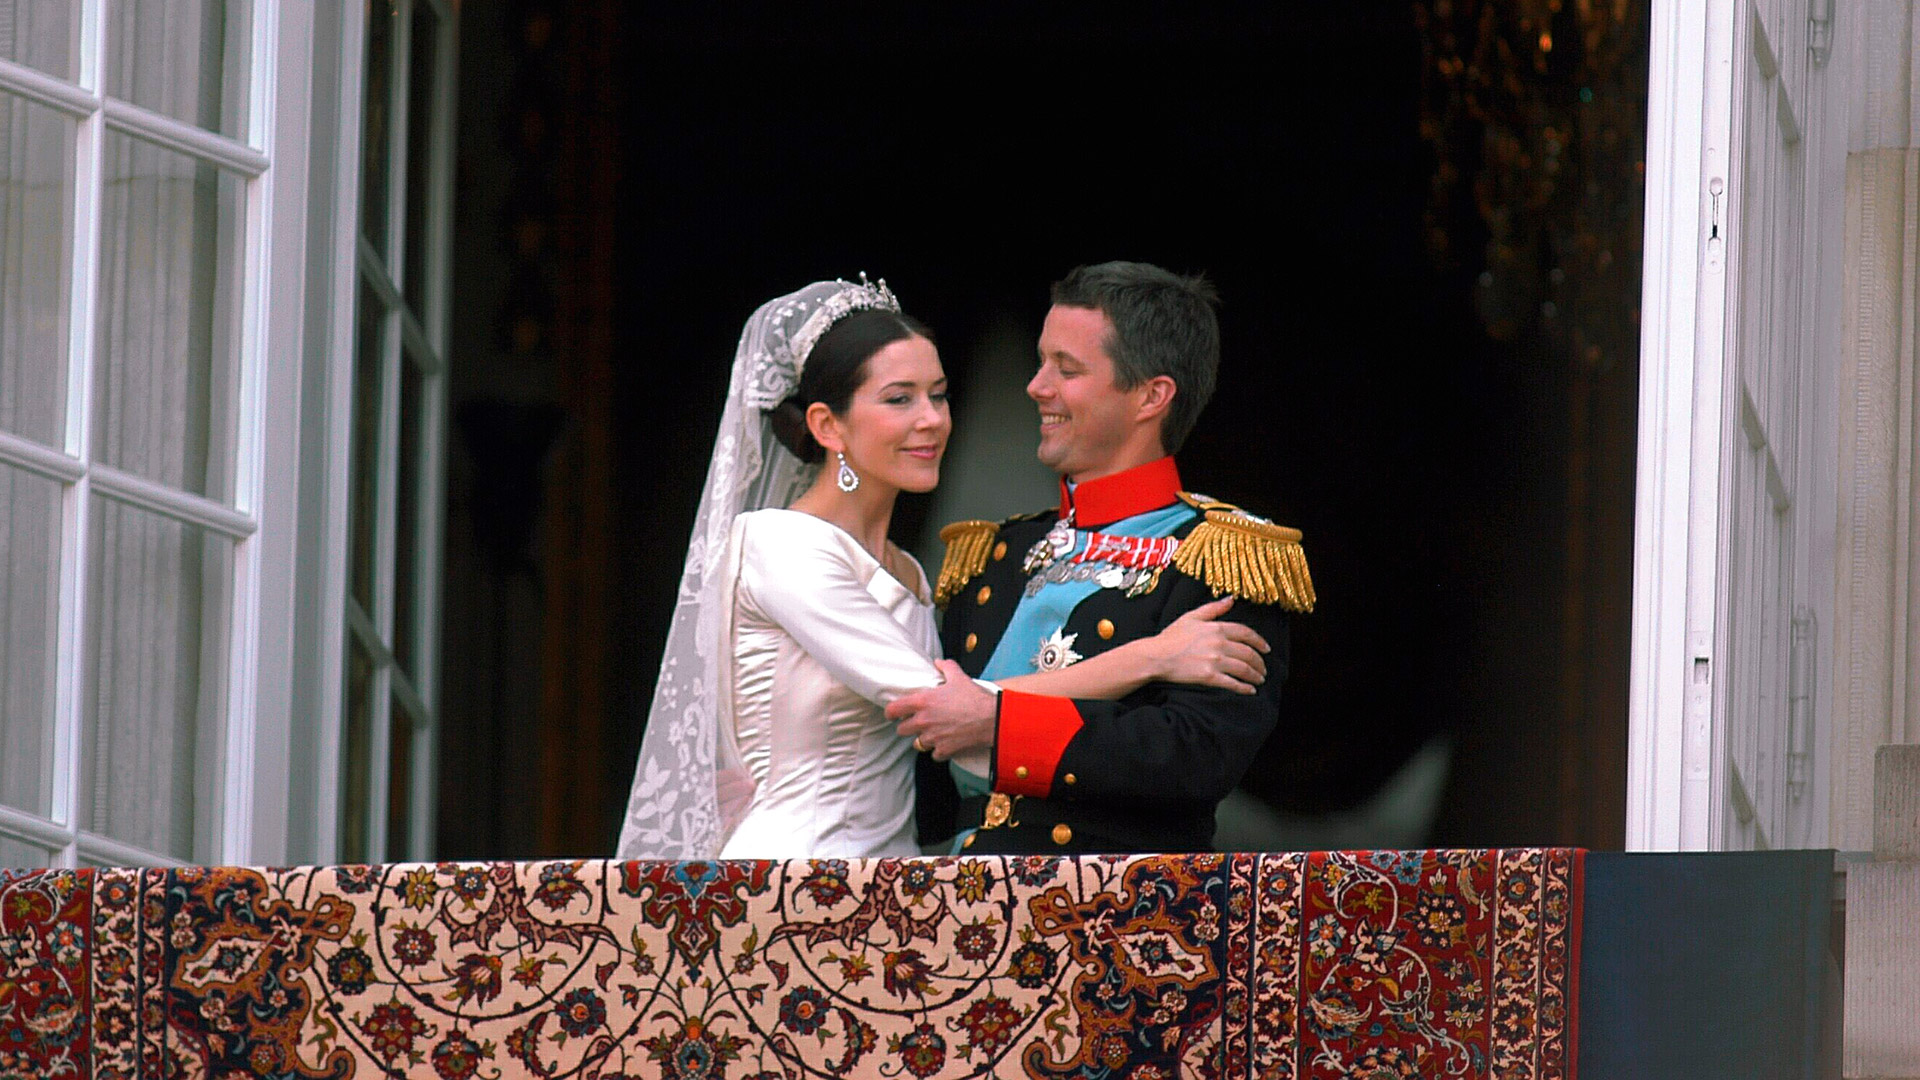 El casamiento del futuro rey de Dinamarca con Mary fue el 14 de mayo de 2004 (Shutterstock)